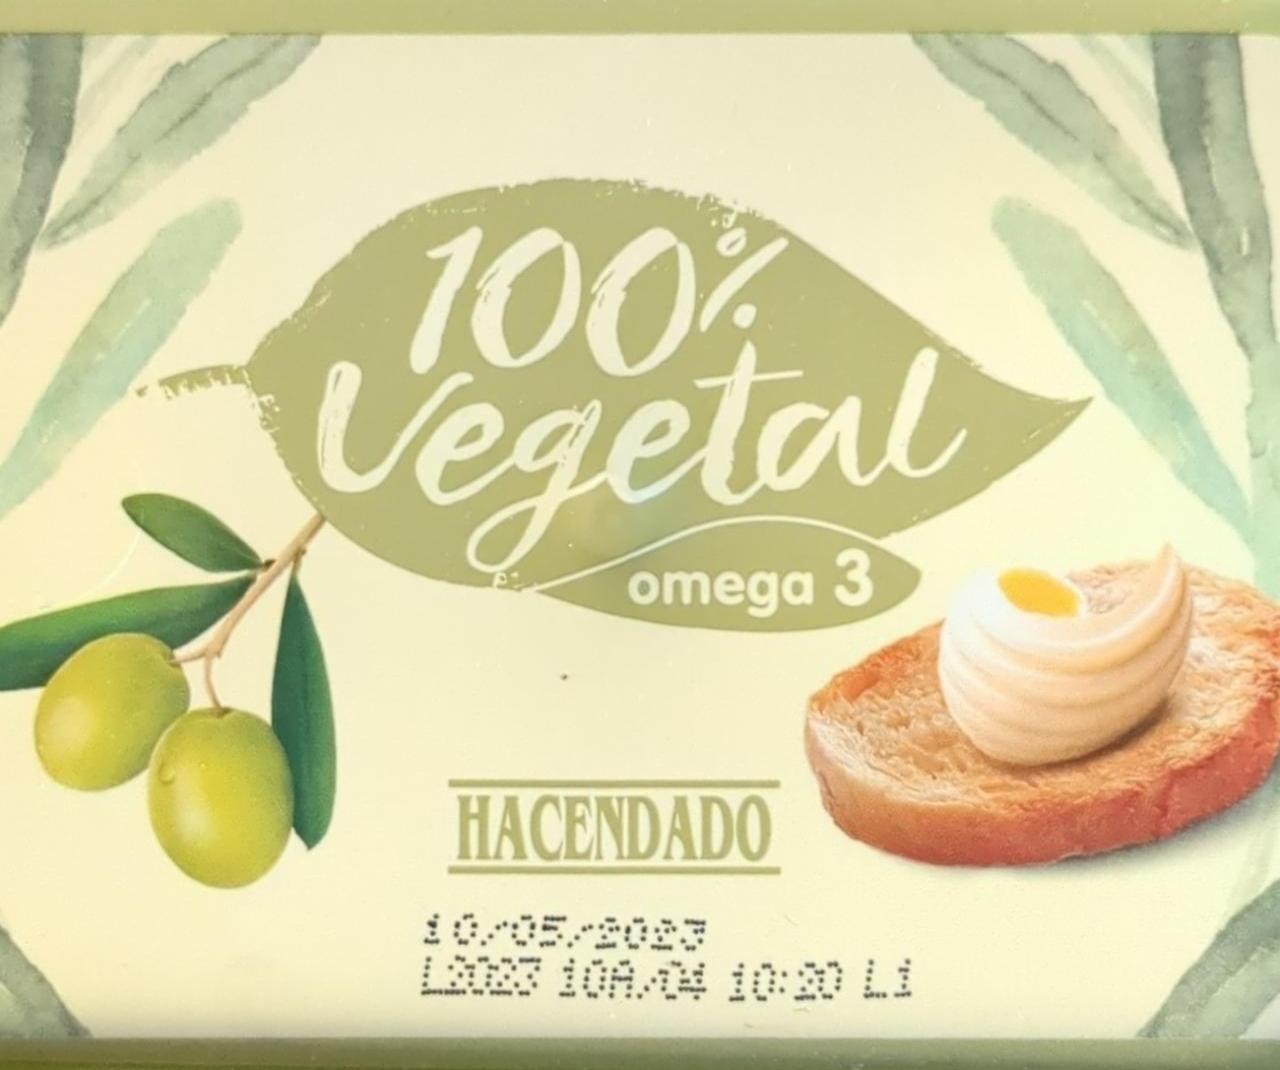 Fotografie - 100 % Vegetal Omega 3 Hacendado